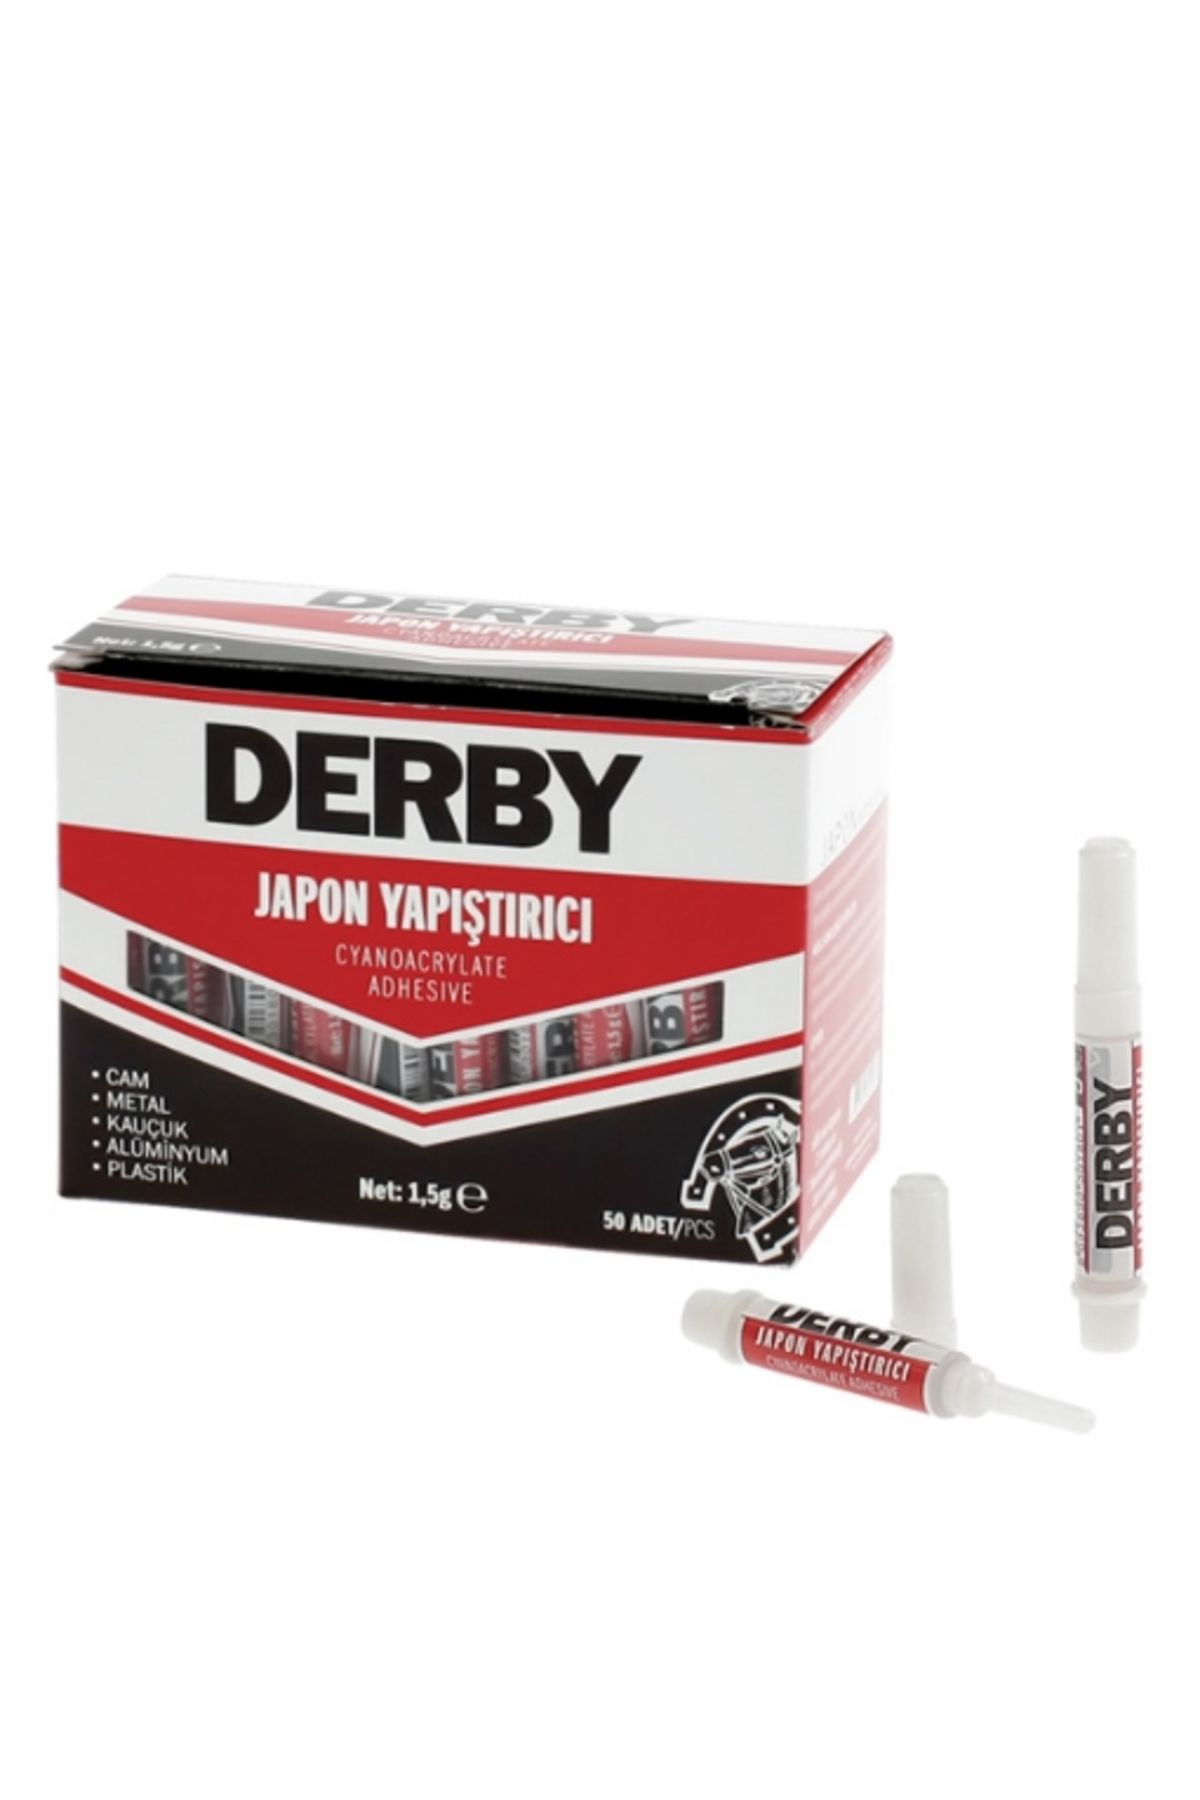 Derby Japon Yapıstırıcı 1.5Gr (6'lı)